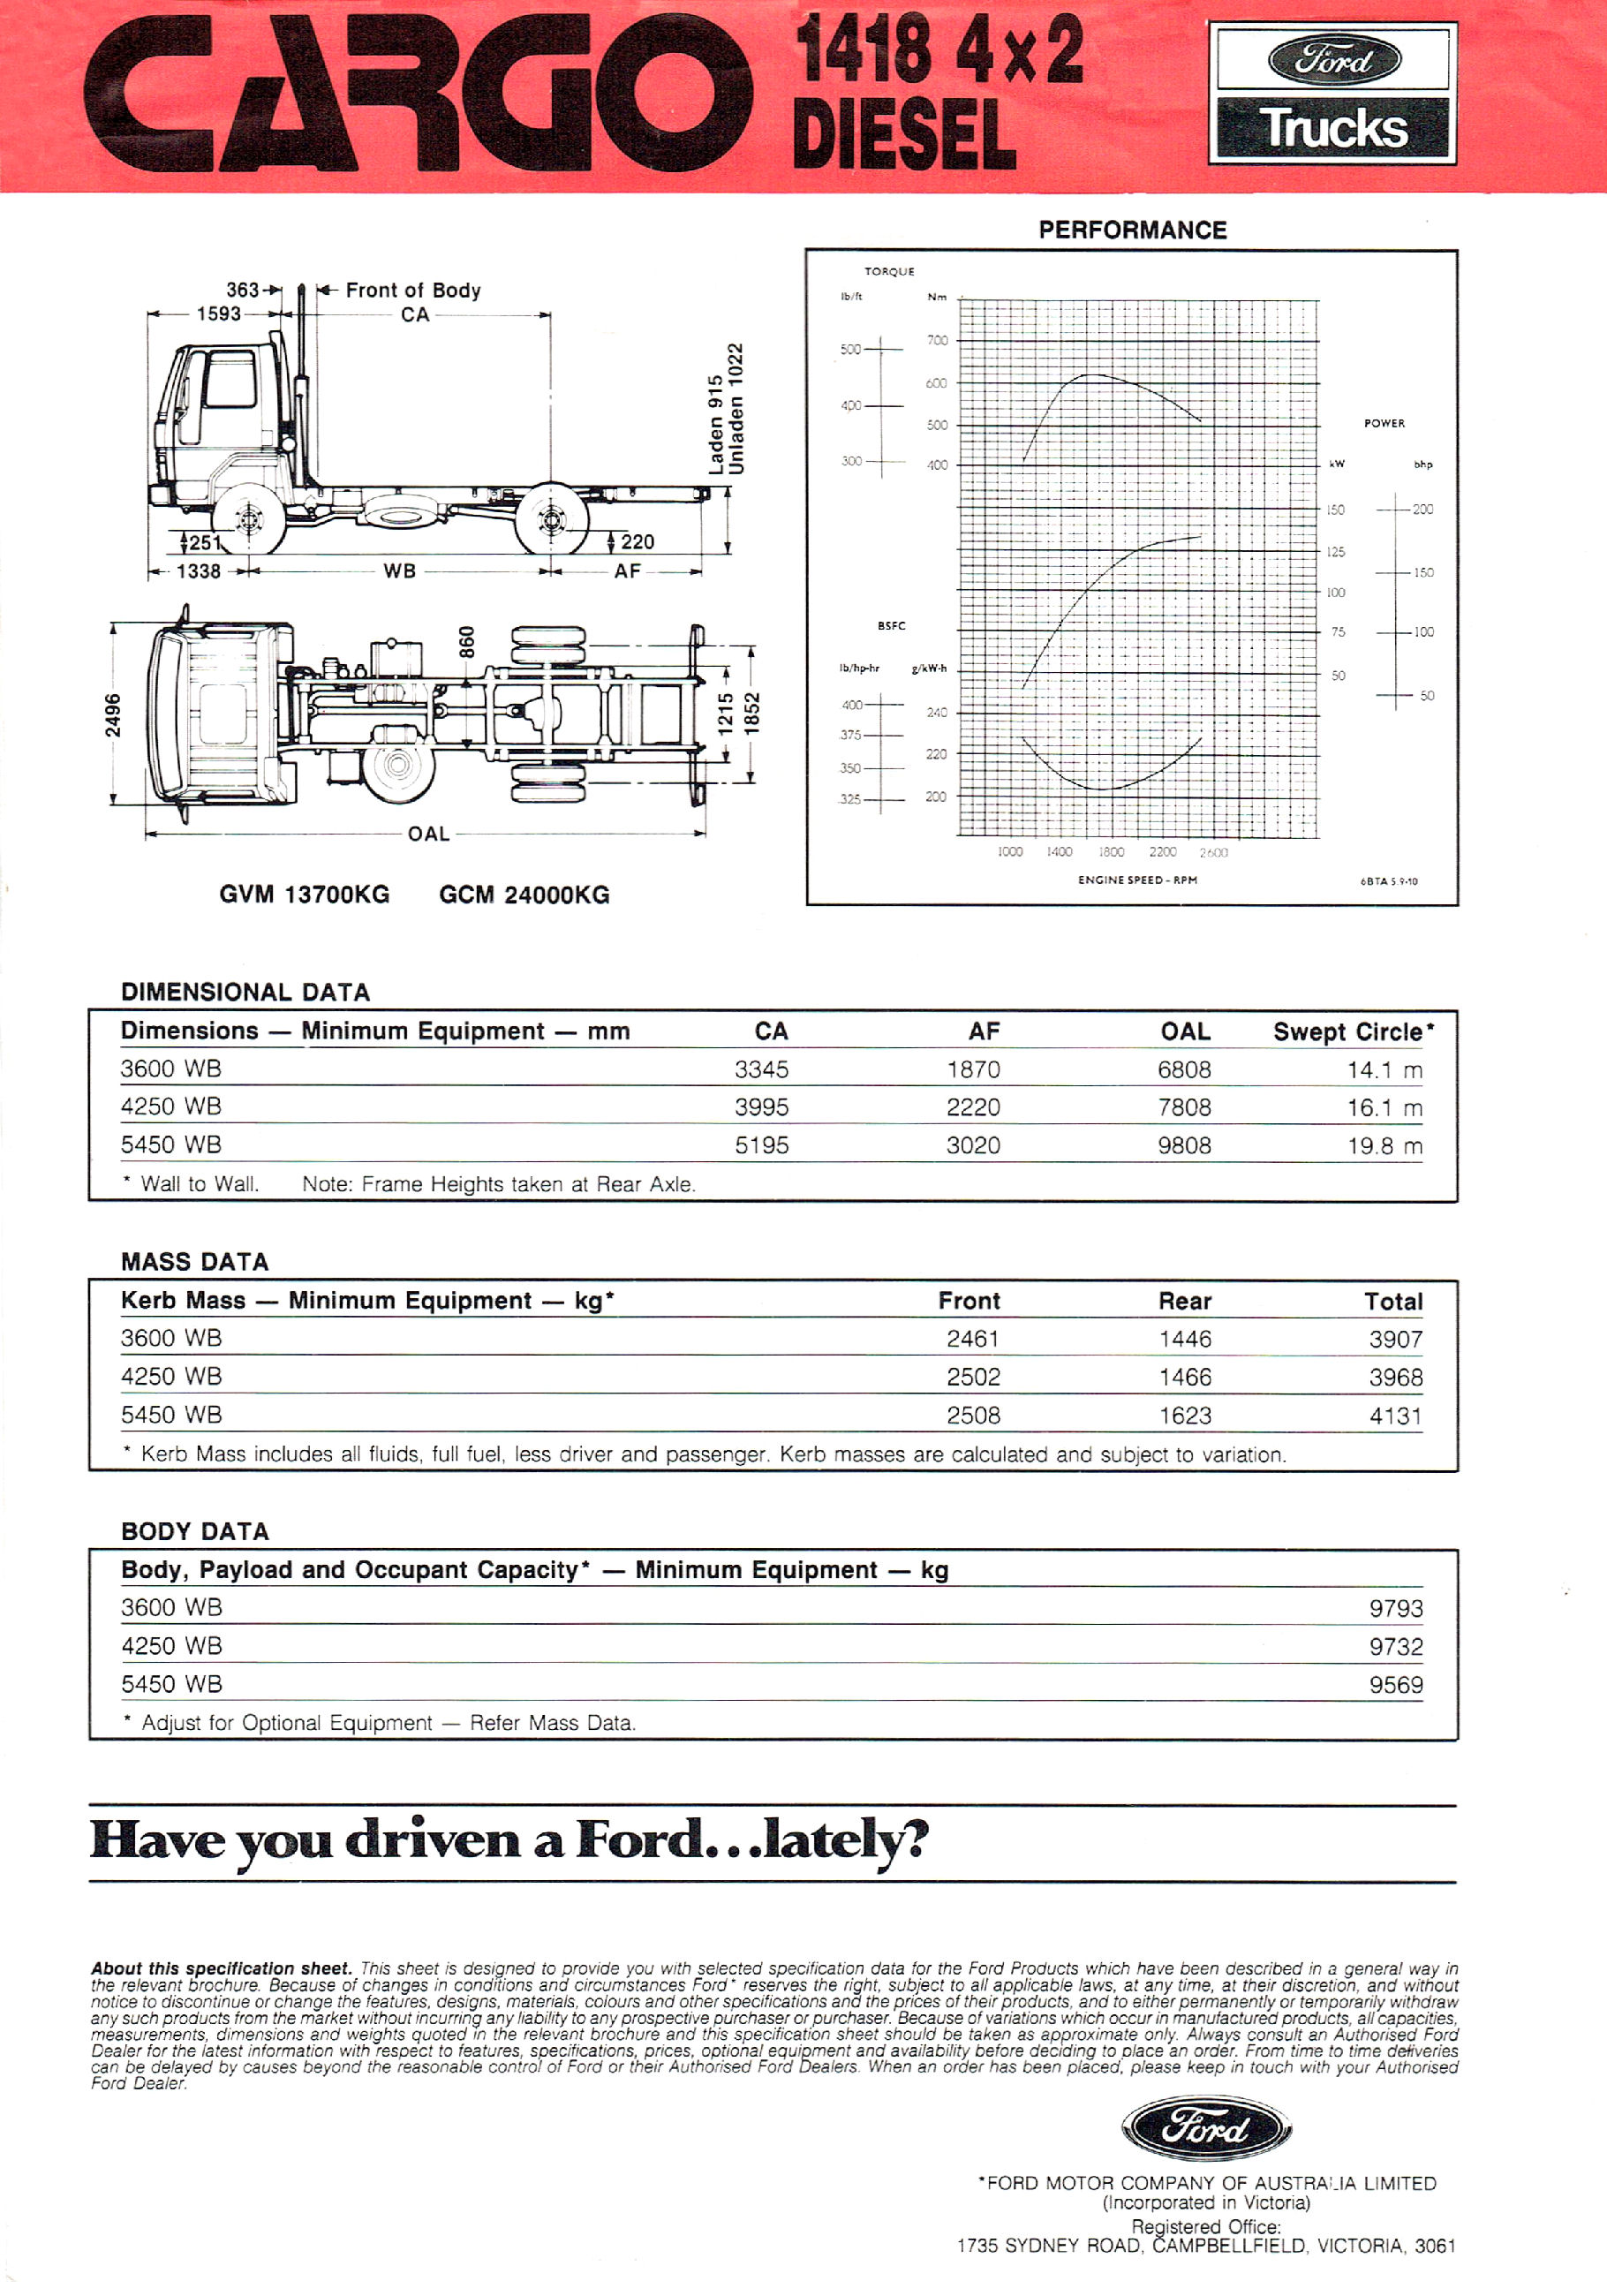 1990 Ford Cargo 1418 Diesel (Aus)-01.jpg-2022-12-7 13.54.58